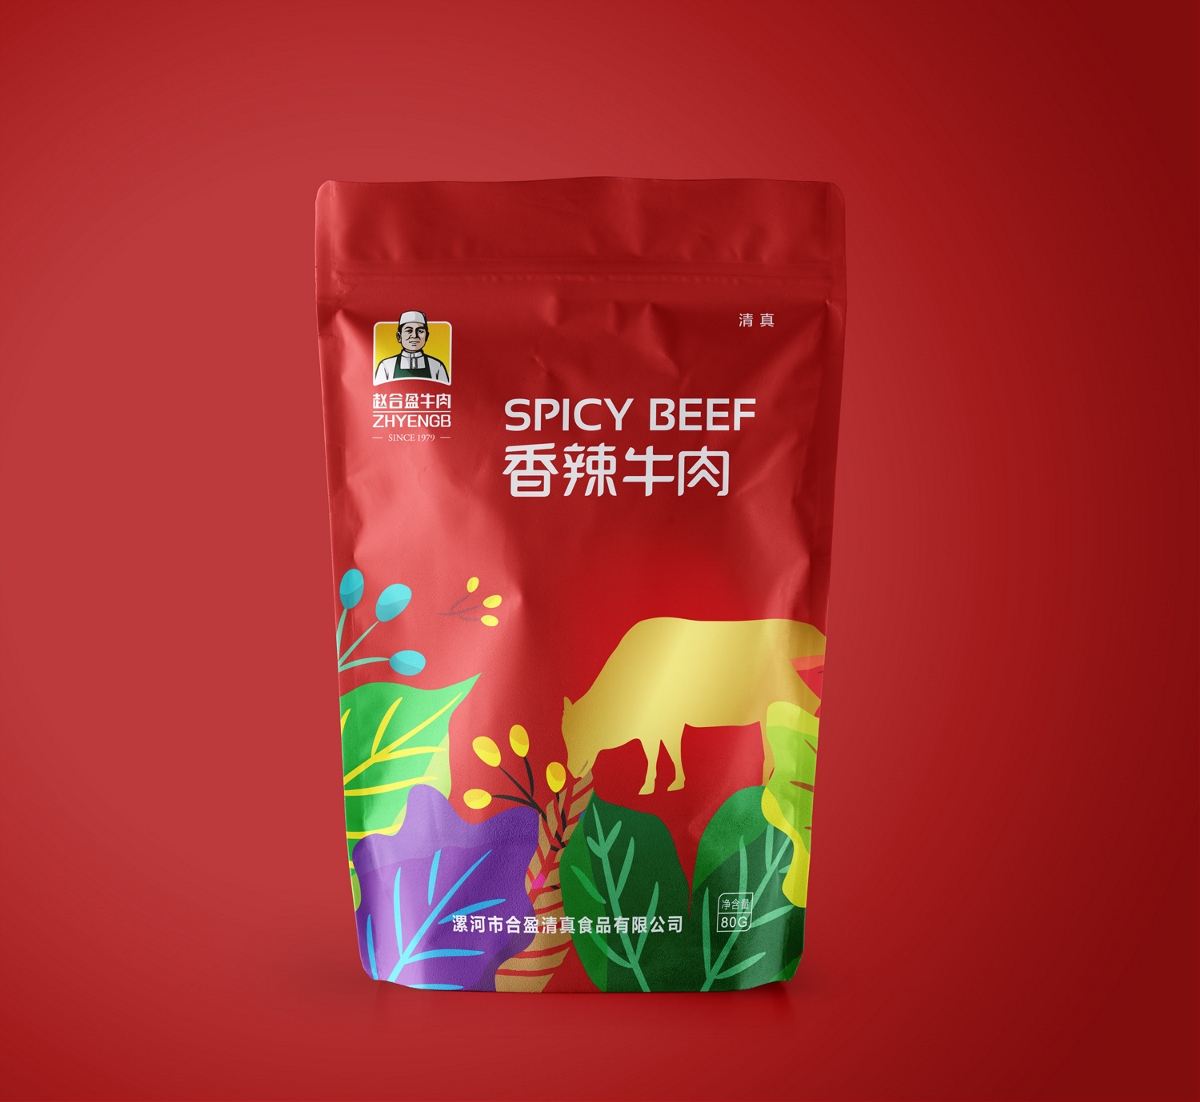 「赵合盈牛肉」 系列包装设计